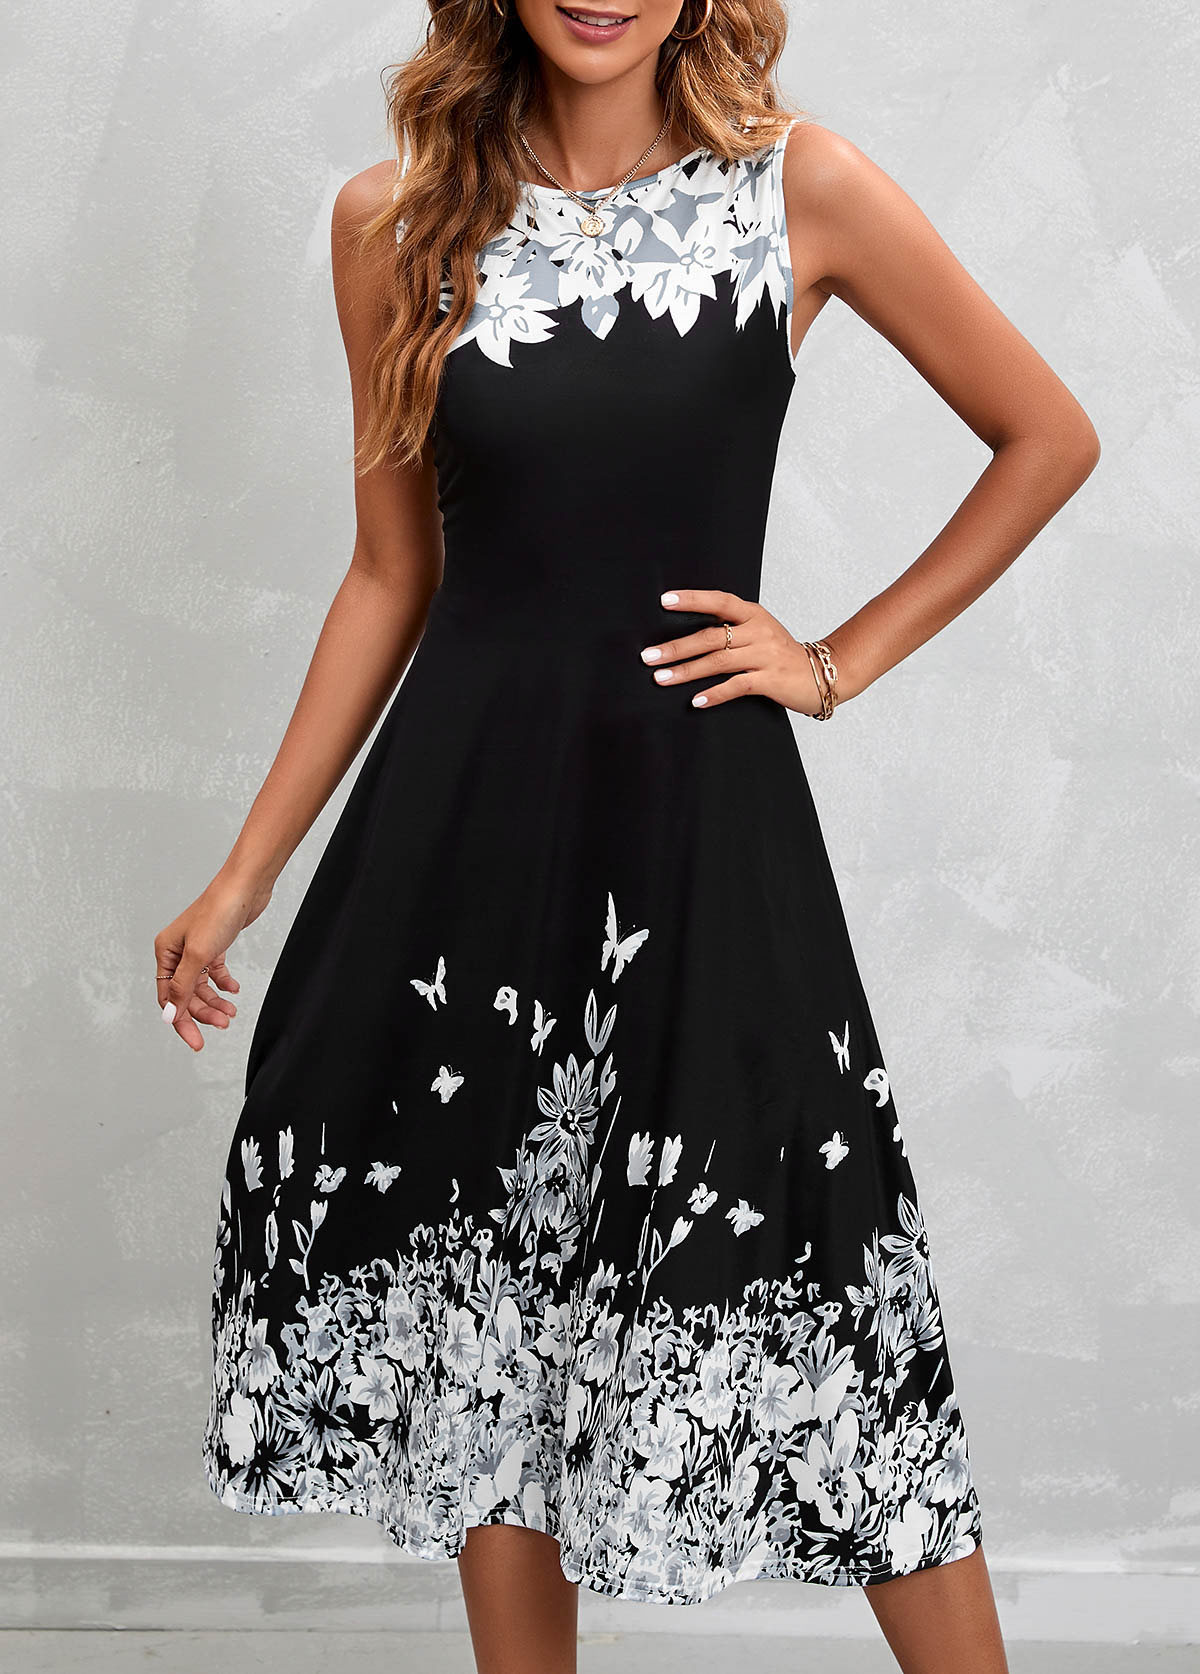 Floral Print Black Sleeveless High Waist Dress